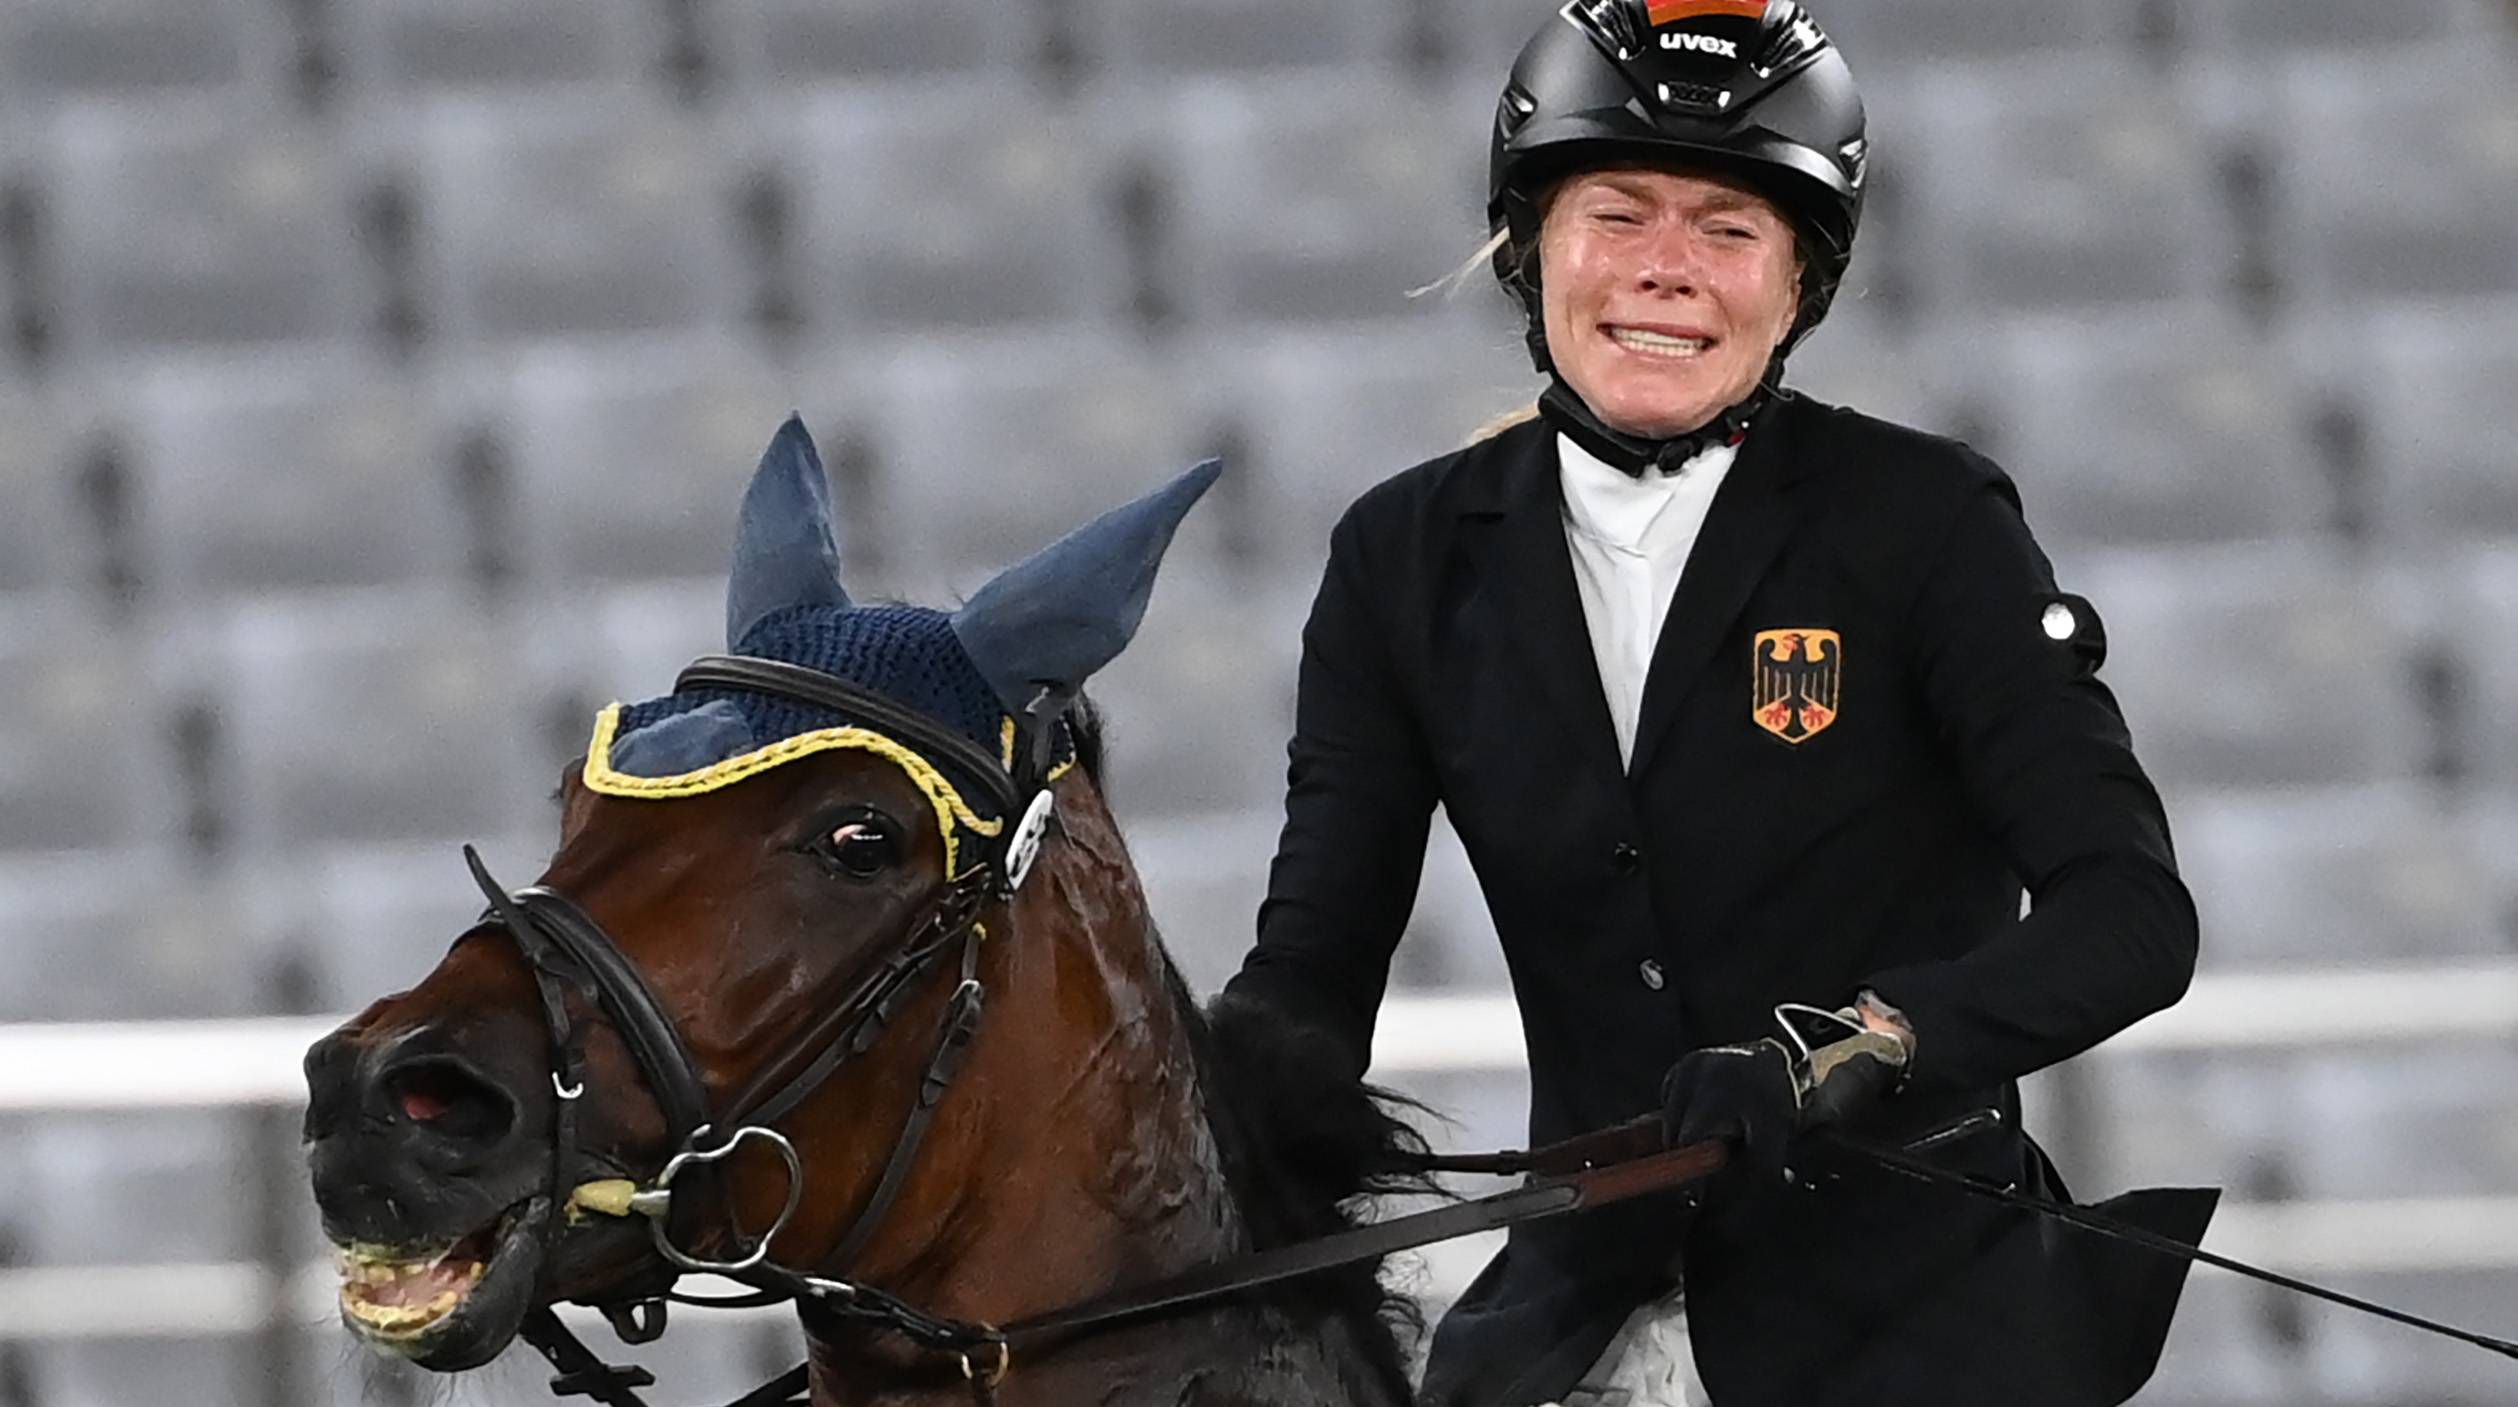 Annika Schleu szerint nem bánt durvábban a lóval, mint az engedélyezett /Fotó: GettyImages